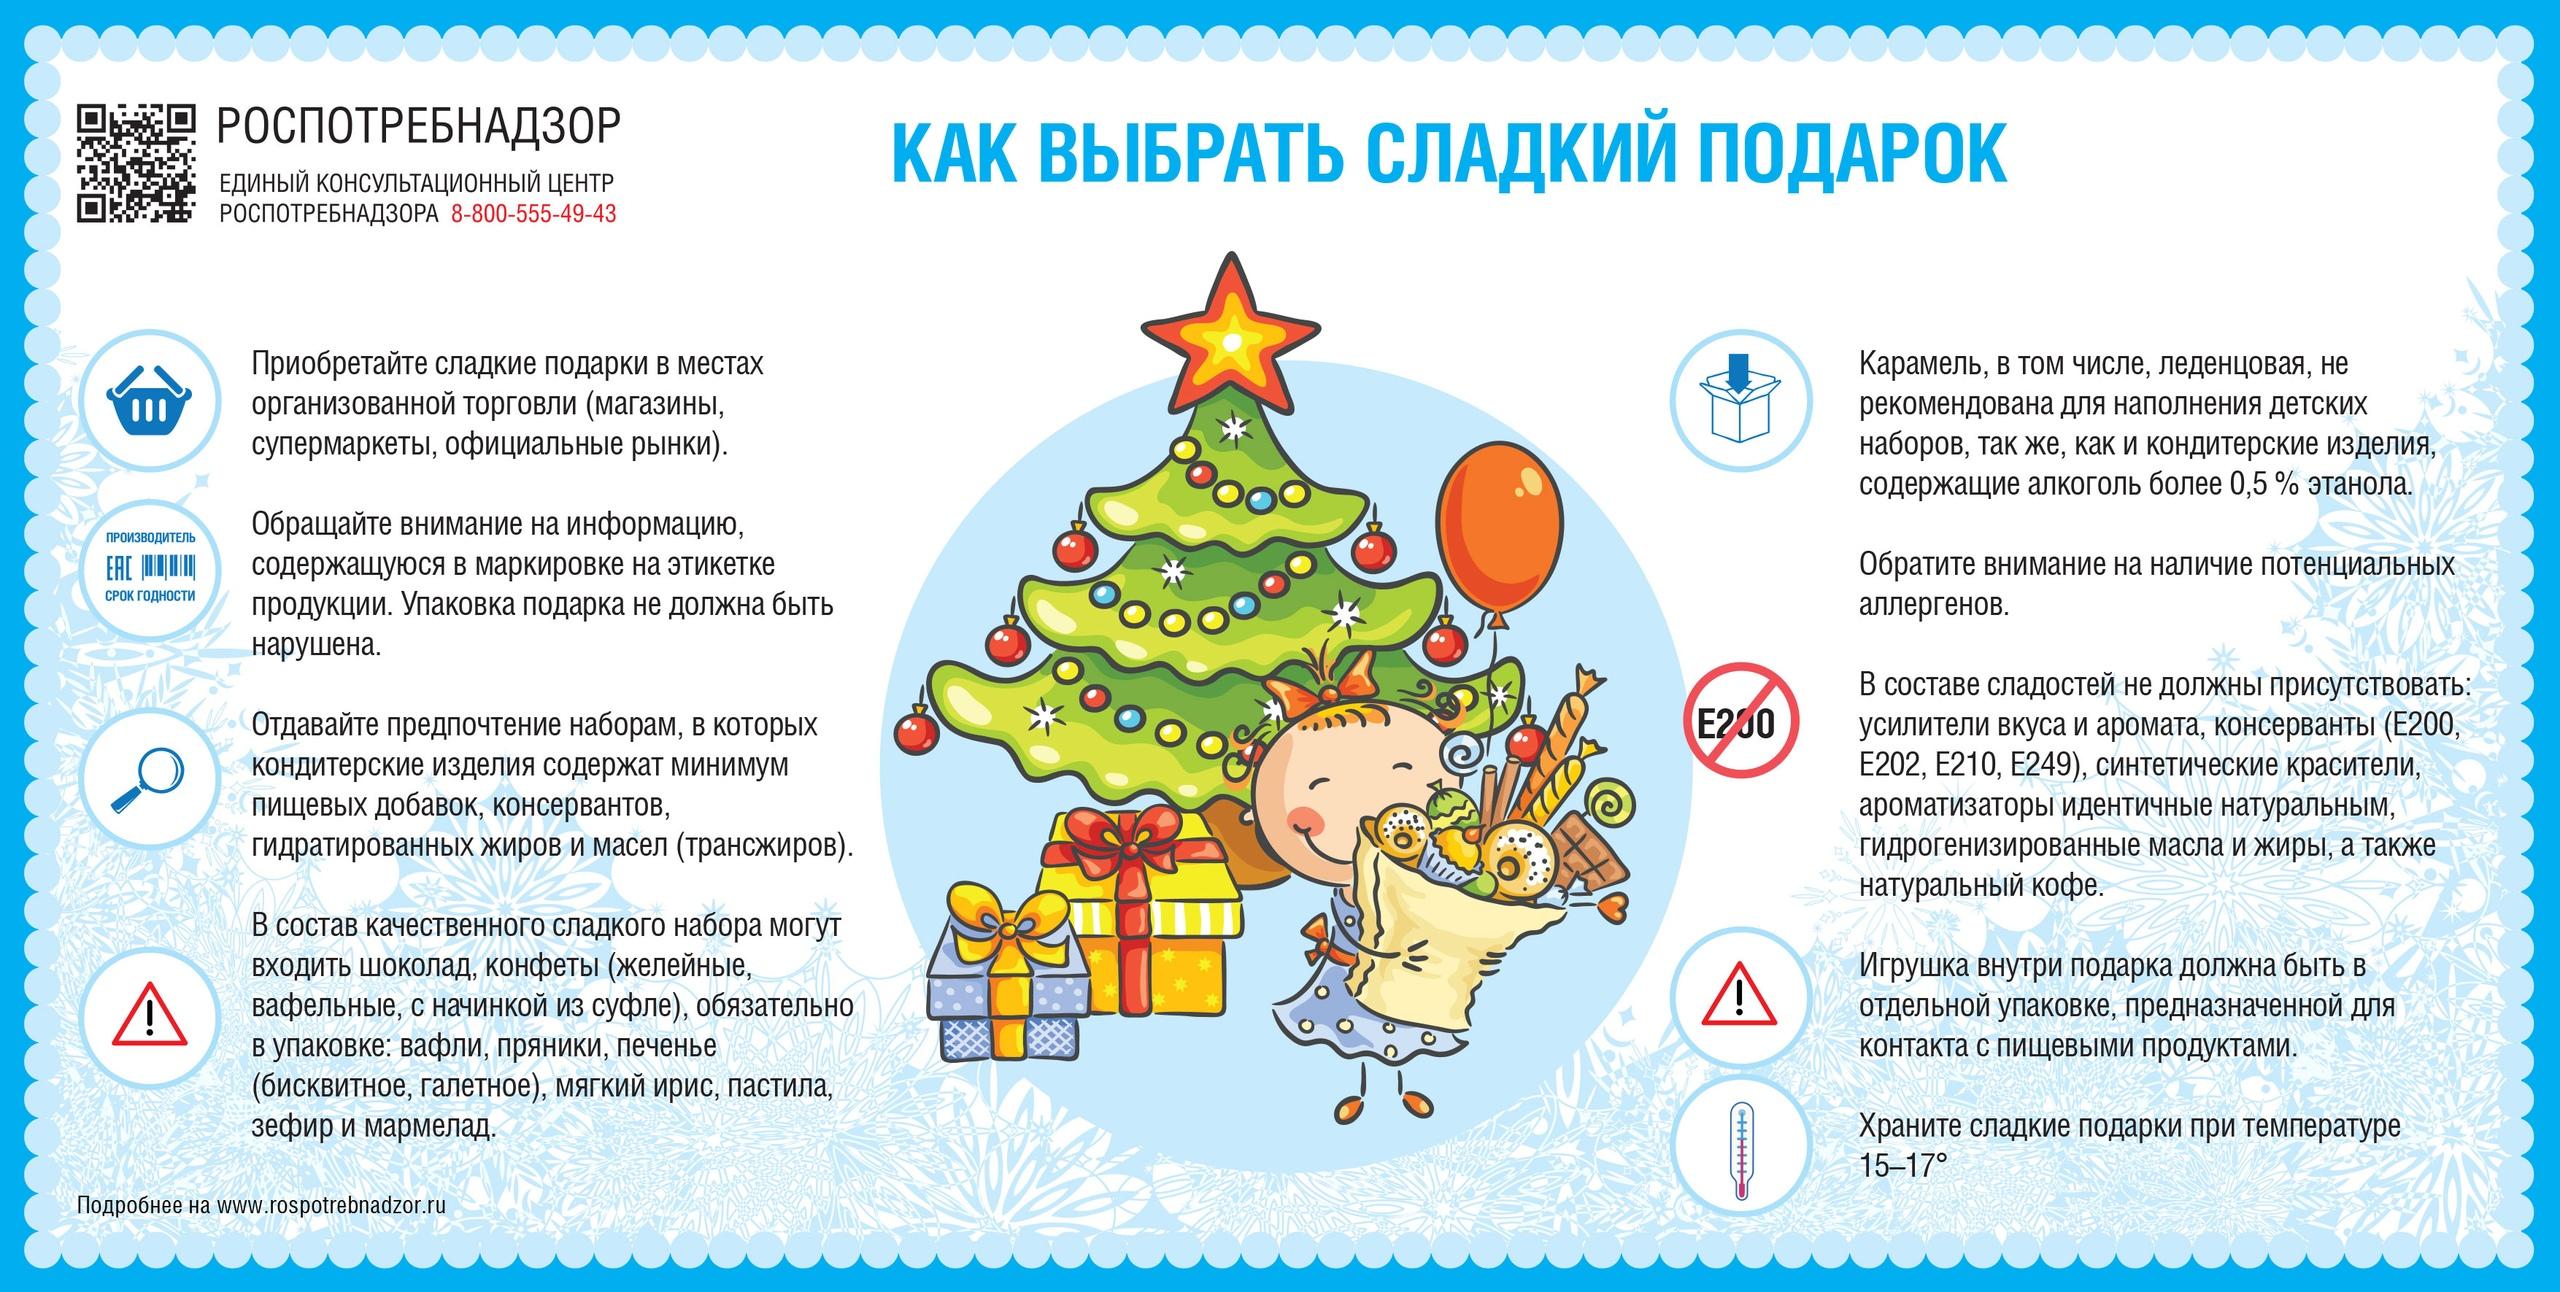 Представлены рекомендации гражданам о выборе сладких новогодних подарков.